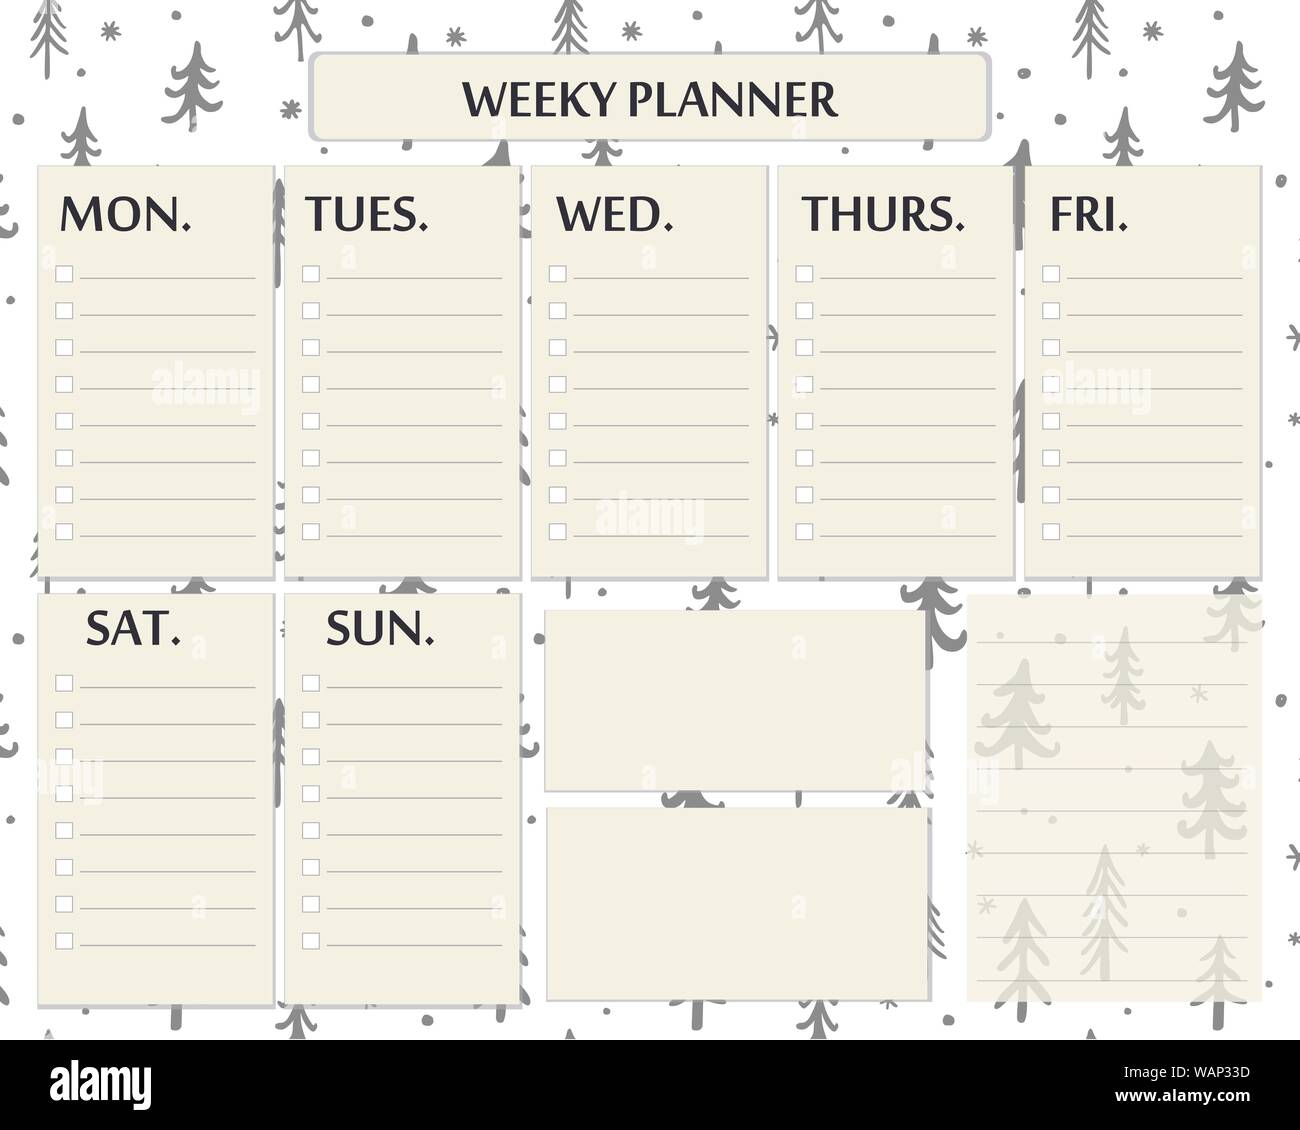 daily-planner-pink-girly-cute-weekly-planner-printable-garoto-reclamao